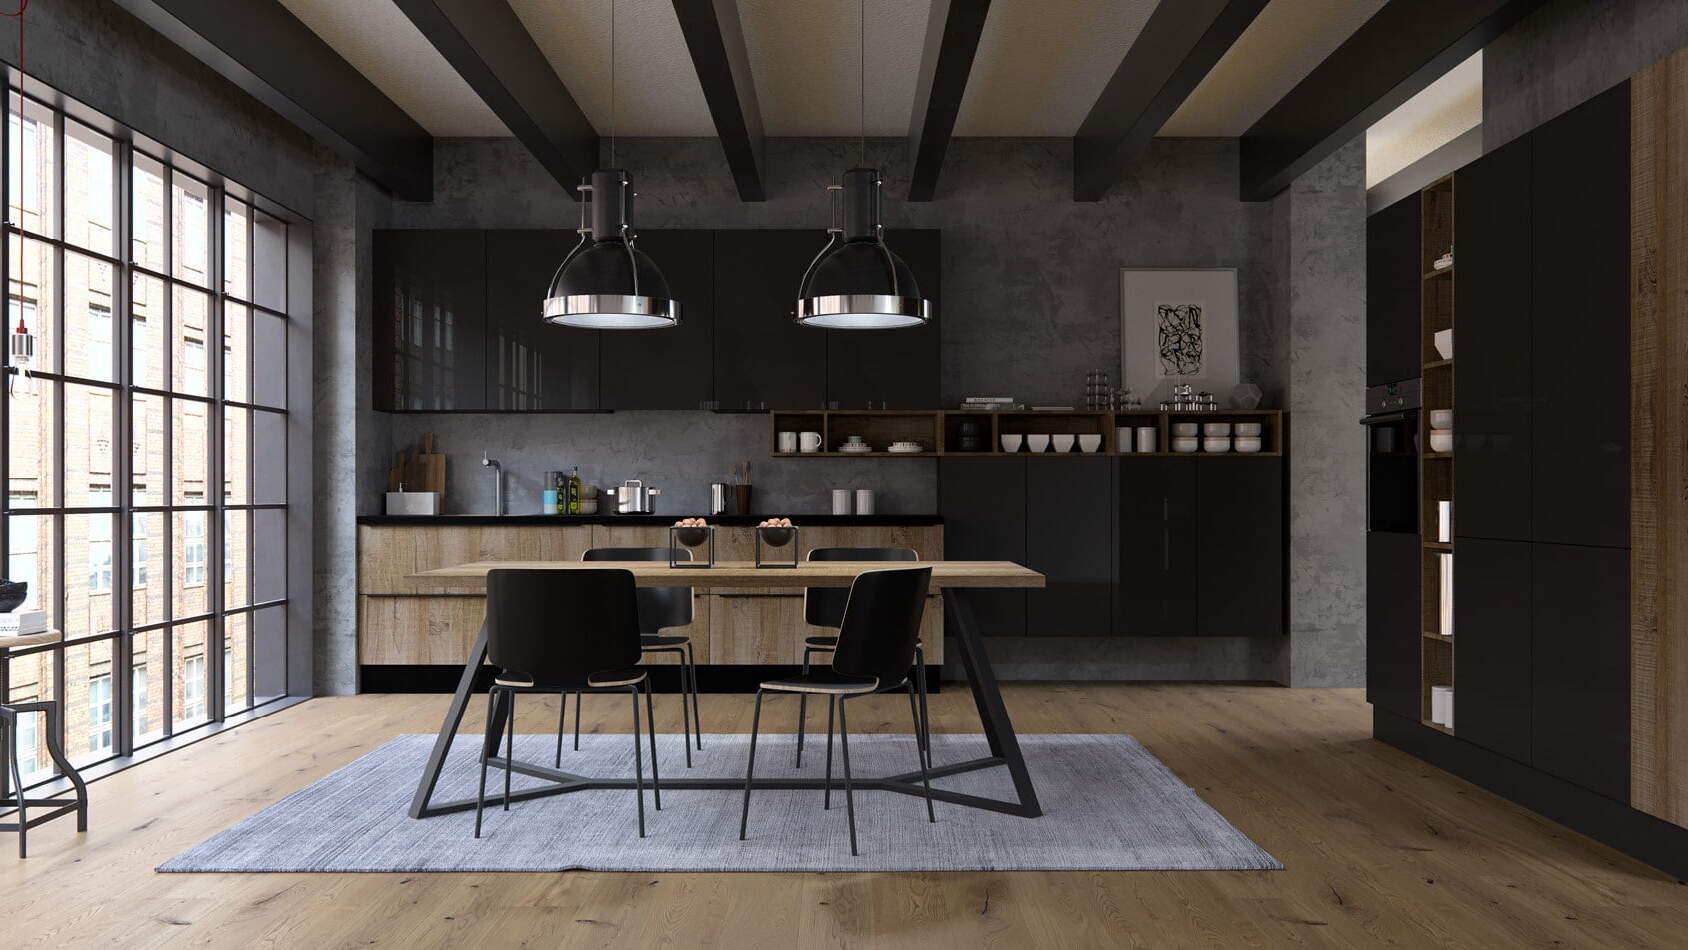 centro kitchen, kitchen, design collection, modern kitchen, dark wood, glossy black colors, table, industrial, kesten